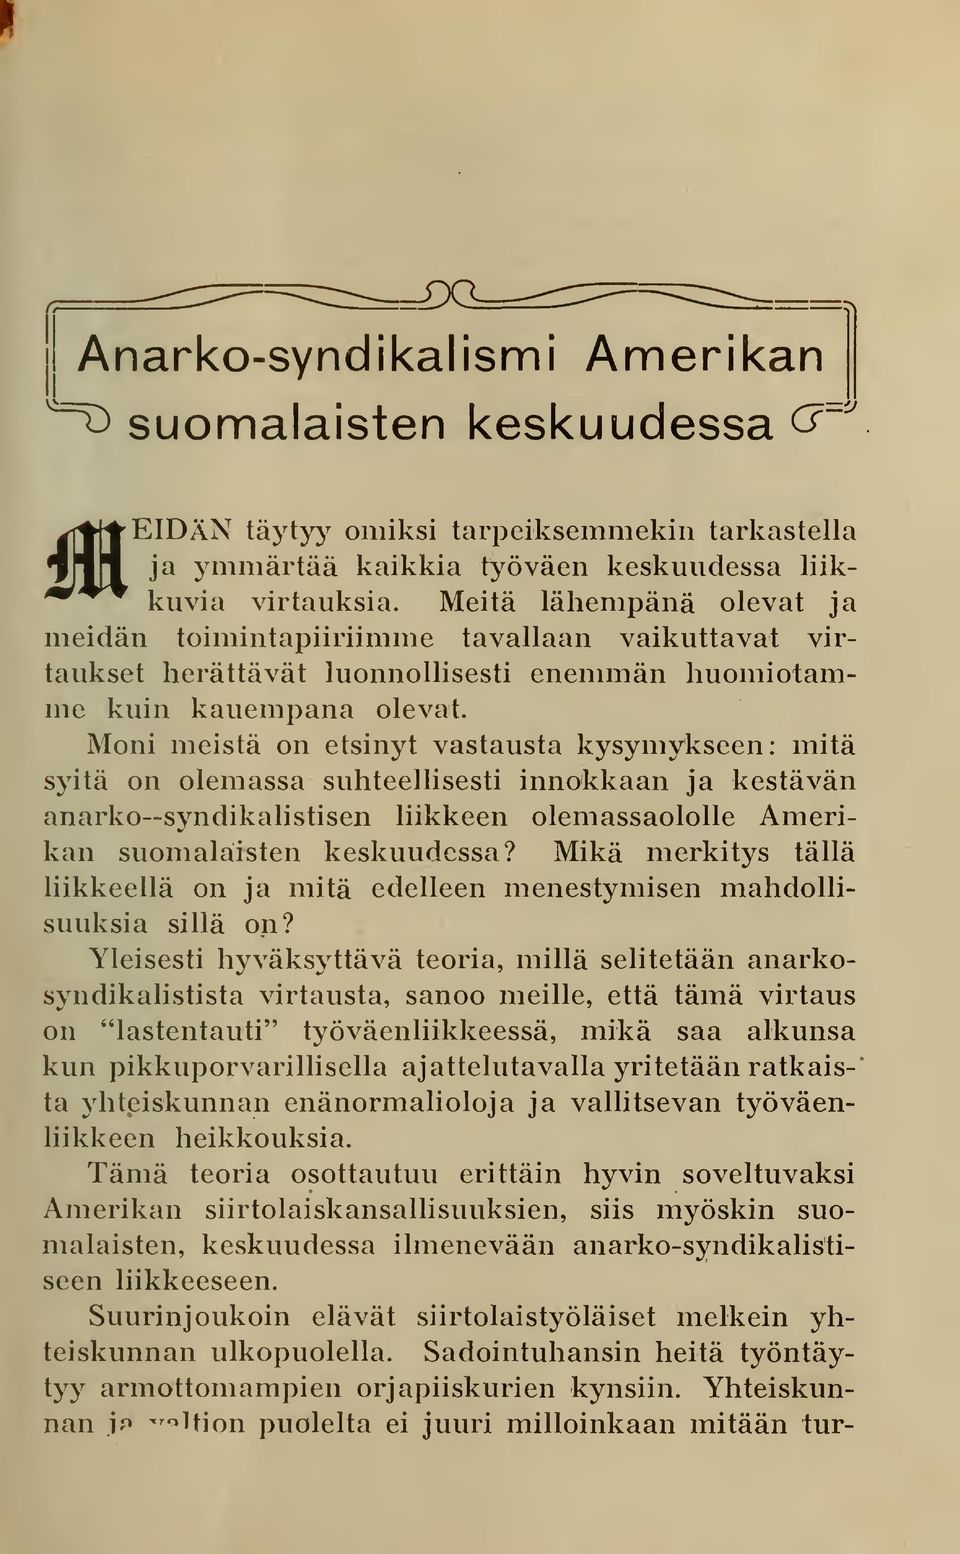 Moni meistä on etsinyt vastausta kysymykseen: initä syitä on olemassa suhteellisesti innokkaan ja kestävän anarko syndikalistisen liikkeen olemassaololle Amerikan suomalaisten keskuudessa?